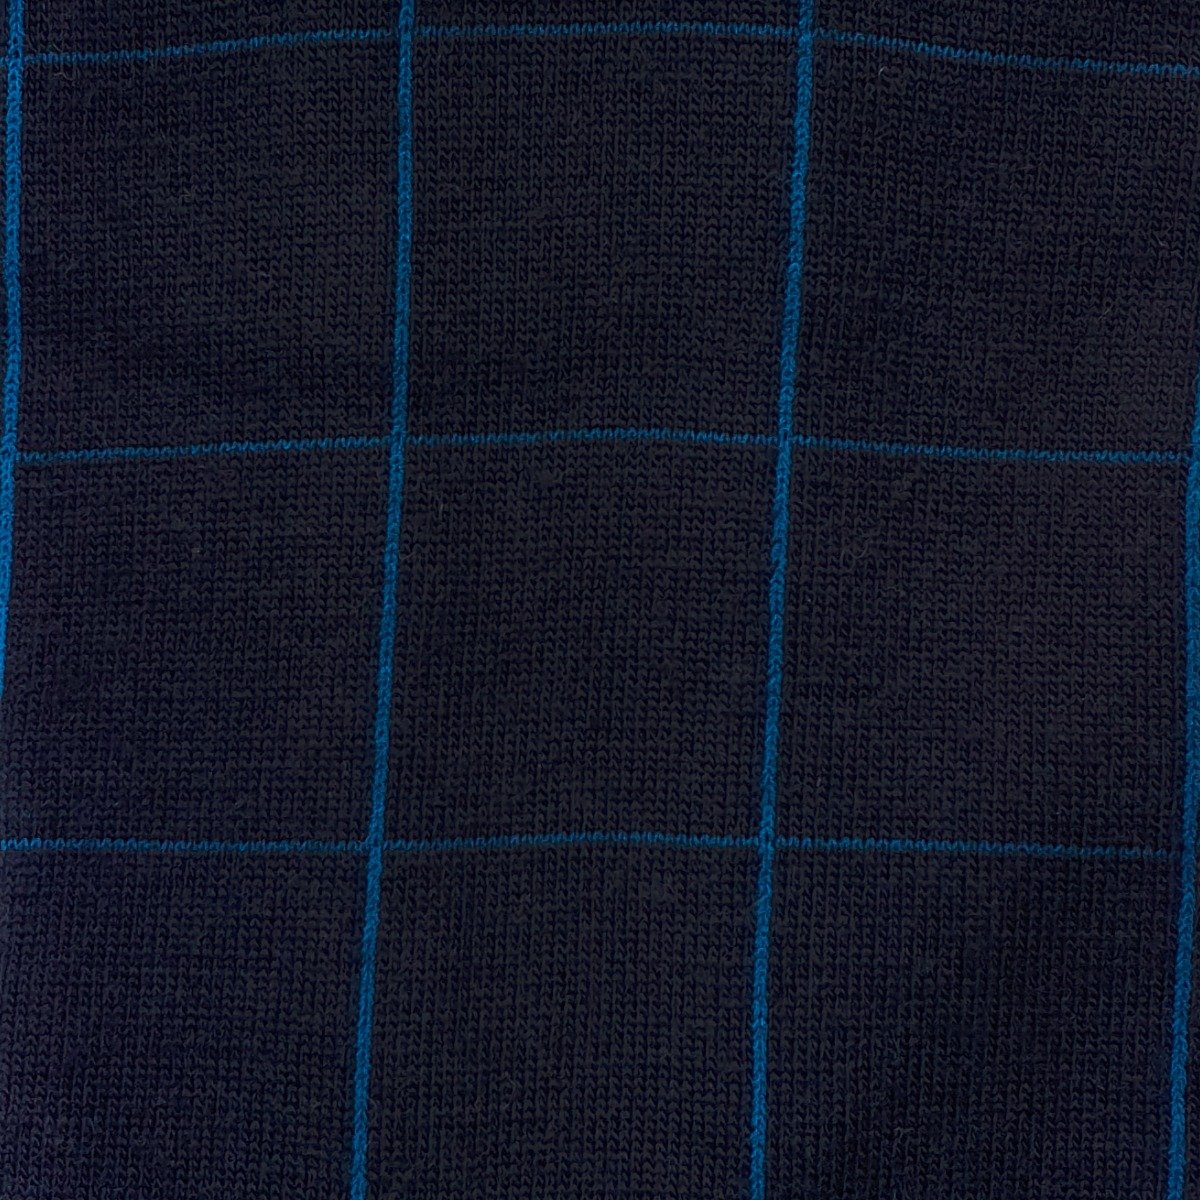 Pantherella Westleigh tamsiai mėlynos merino vilnos kojinės su rėmelių raštu